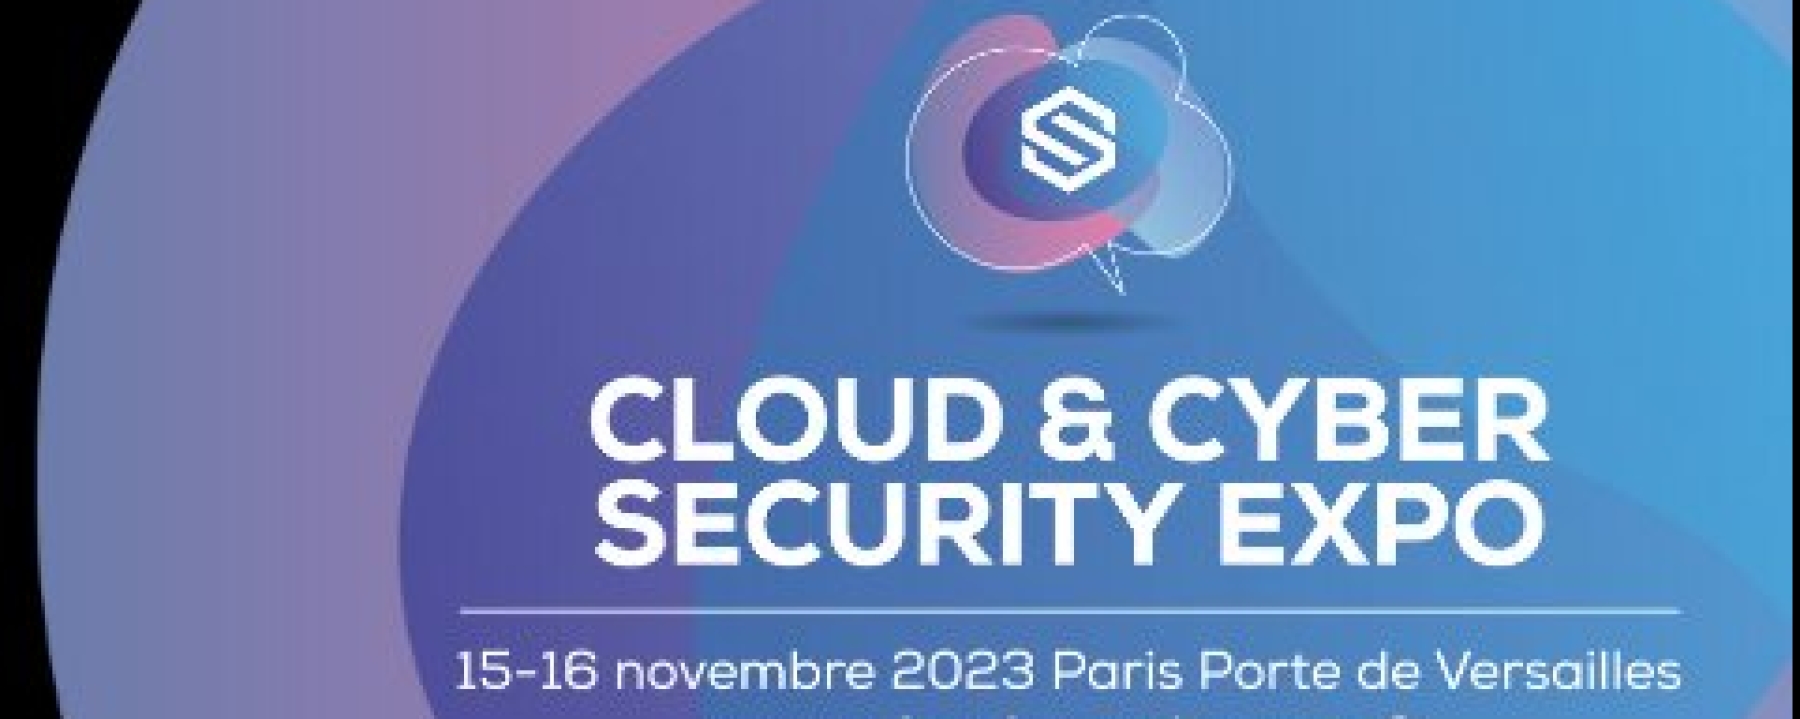 Cloud & Cyber Security Expo Paris 2023